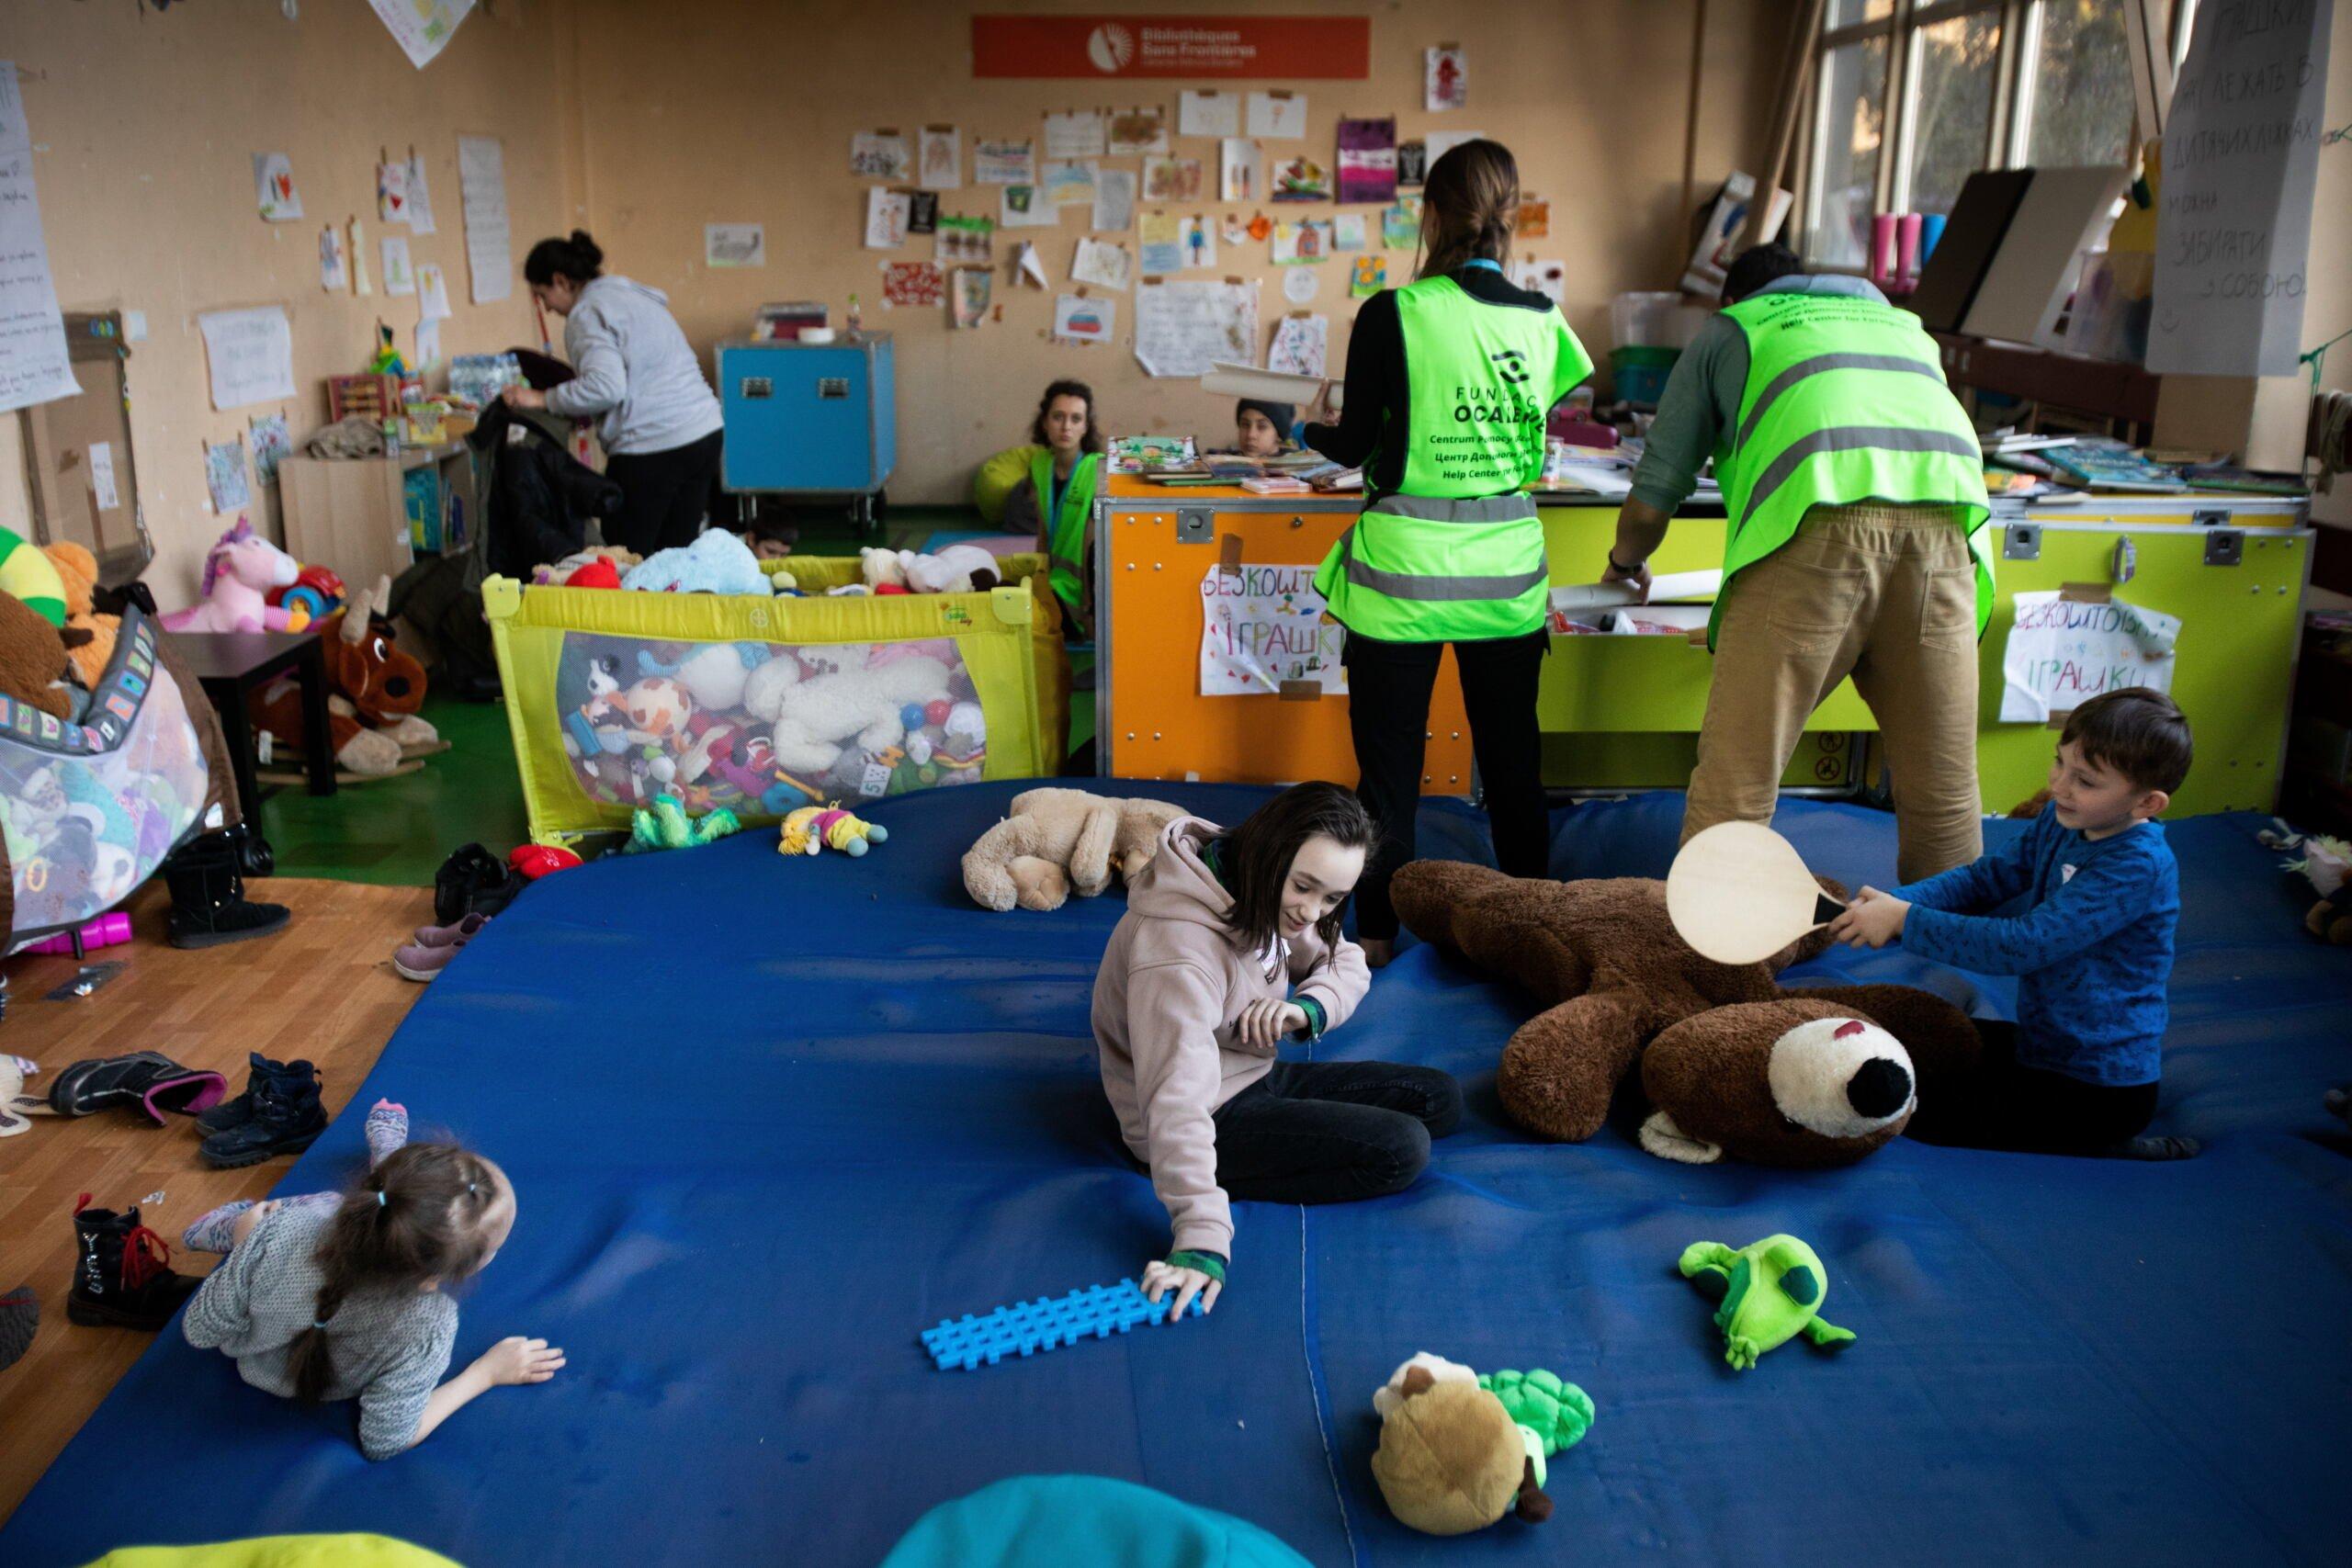 Dzieci bawią się na podłodze, obok wolontariusze w kamizelkach z napisem Fundacja Ocalenie